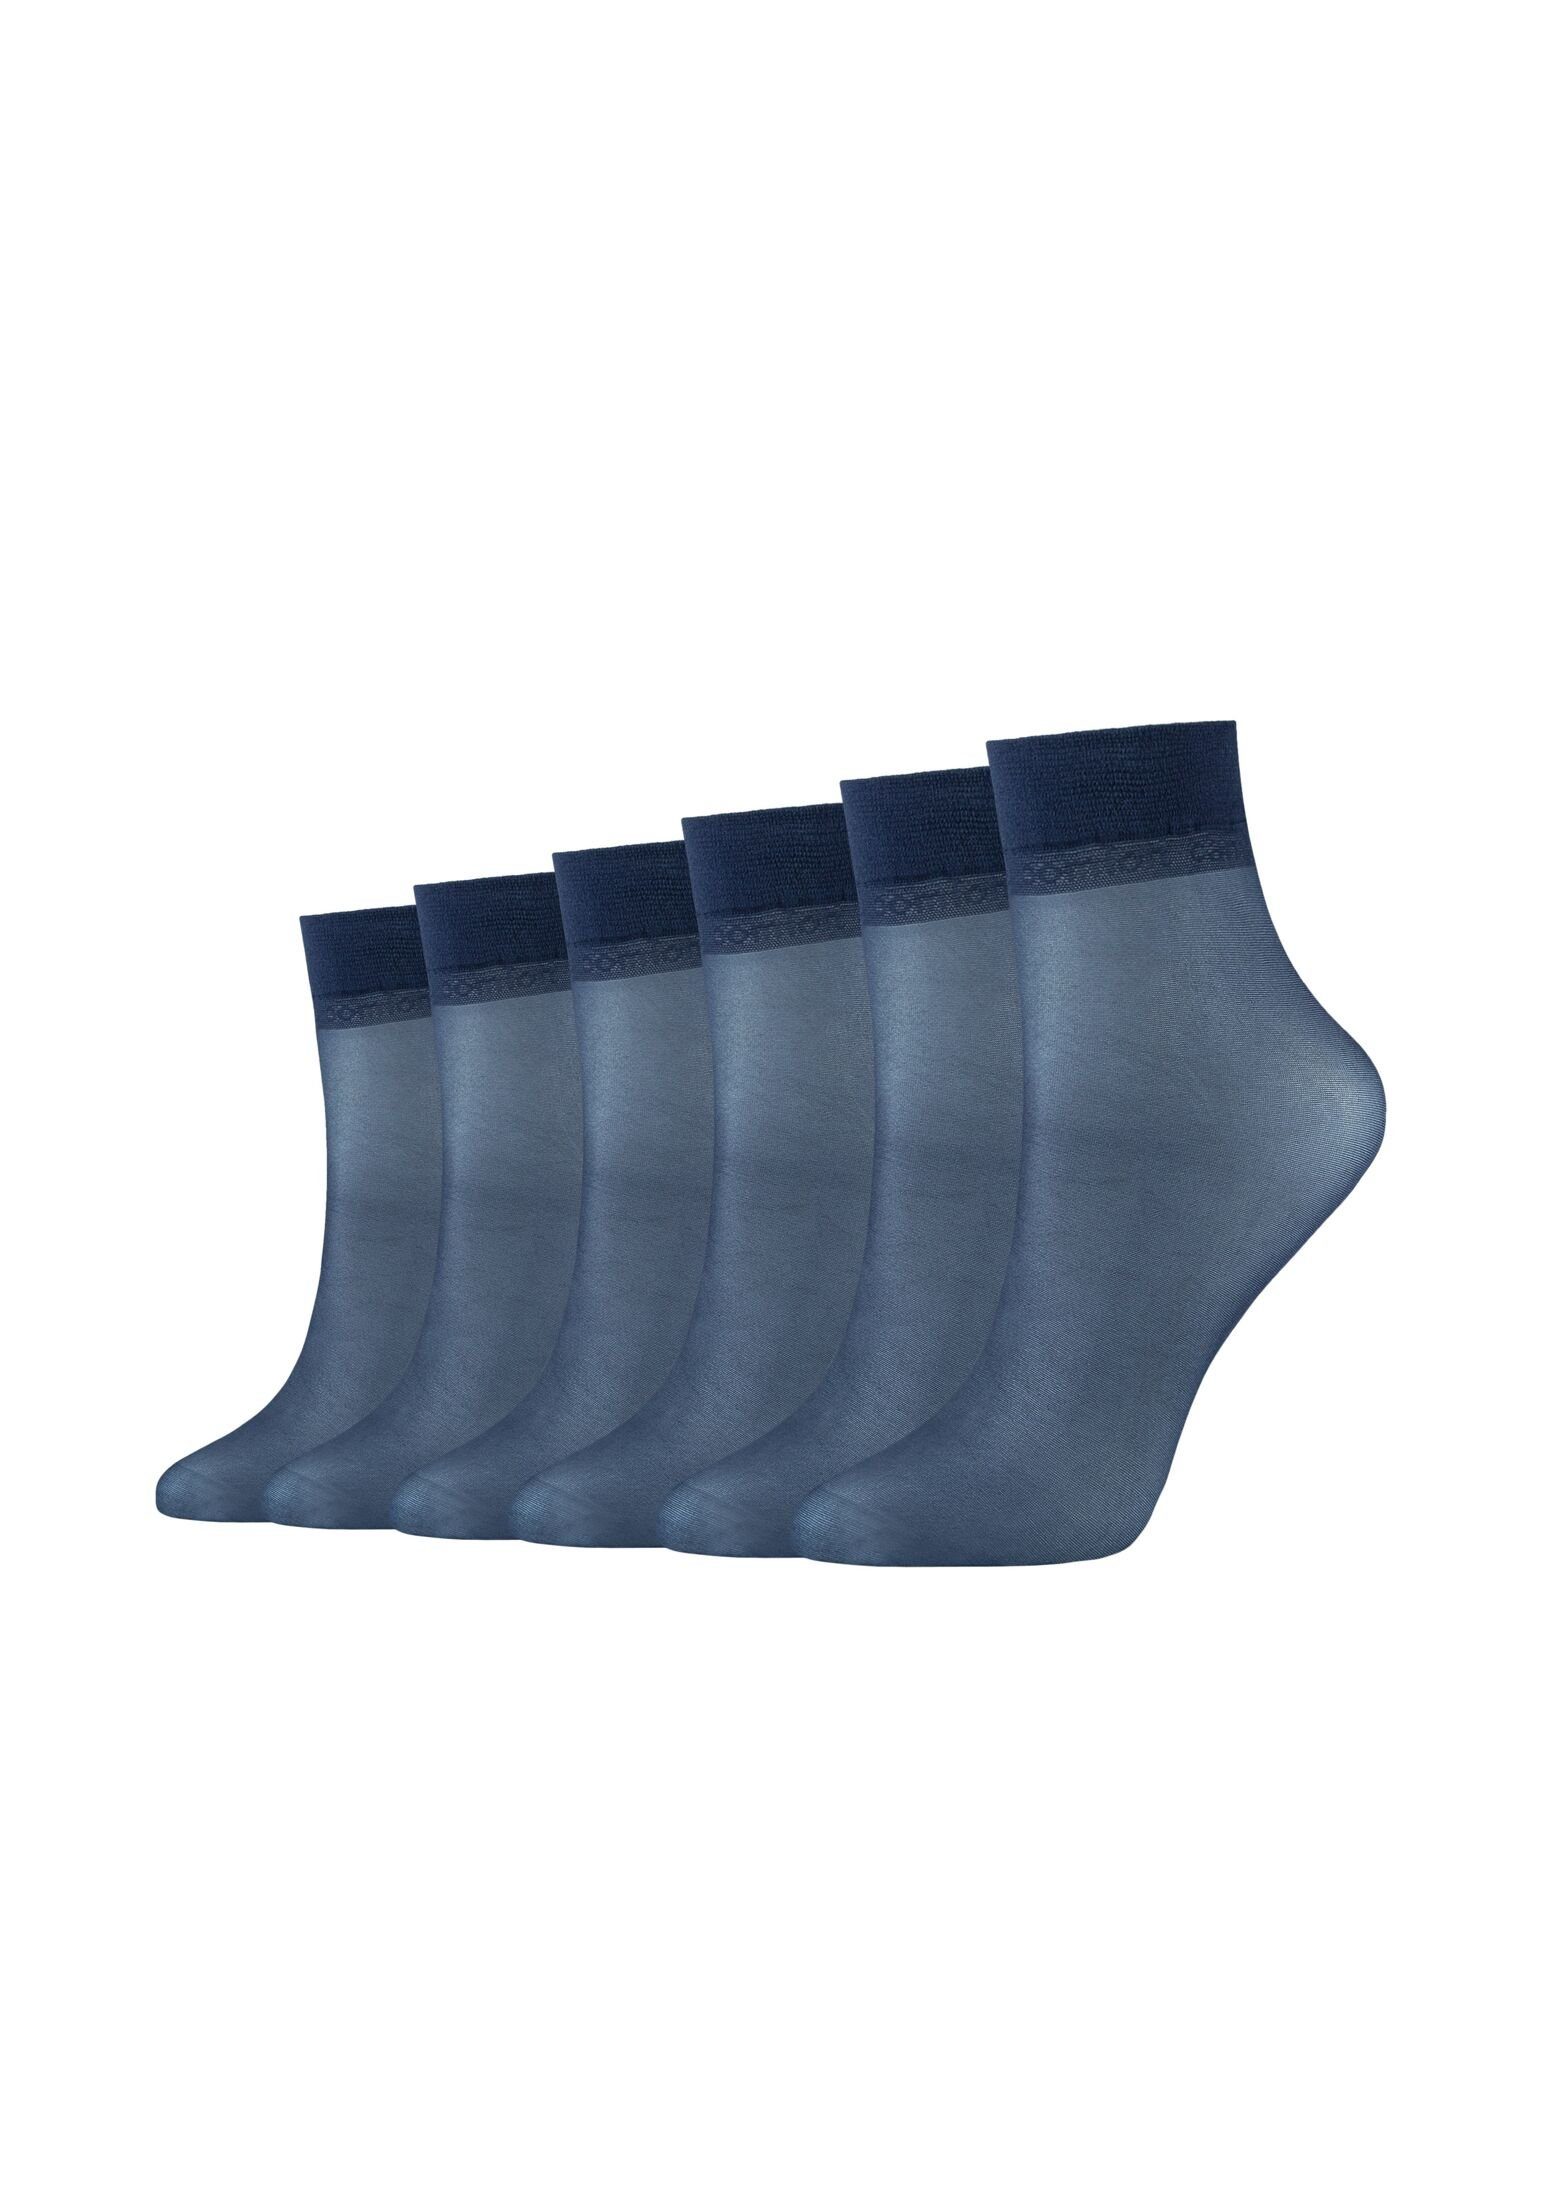 Camano Socken Socken 6er Pack navy